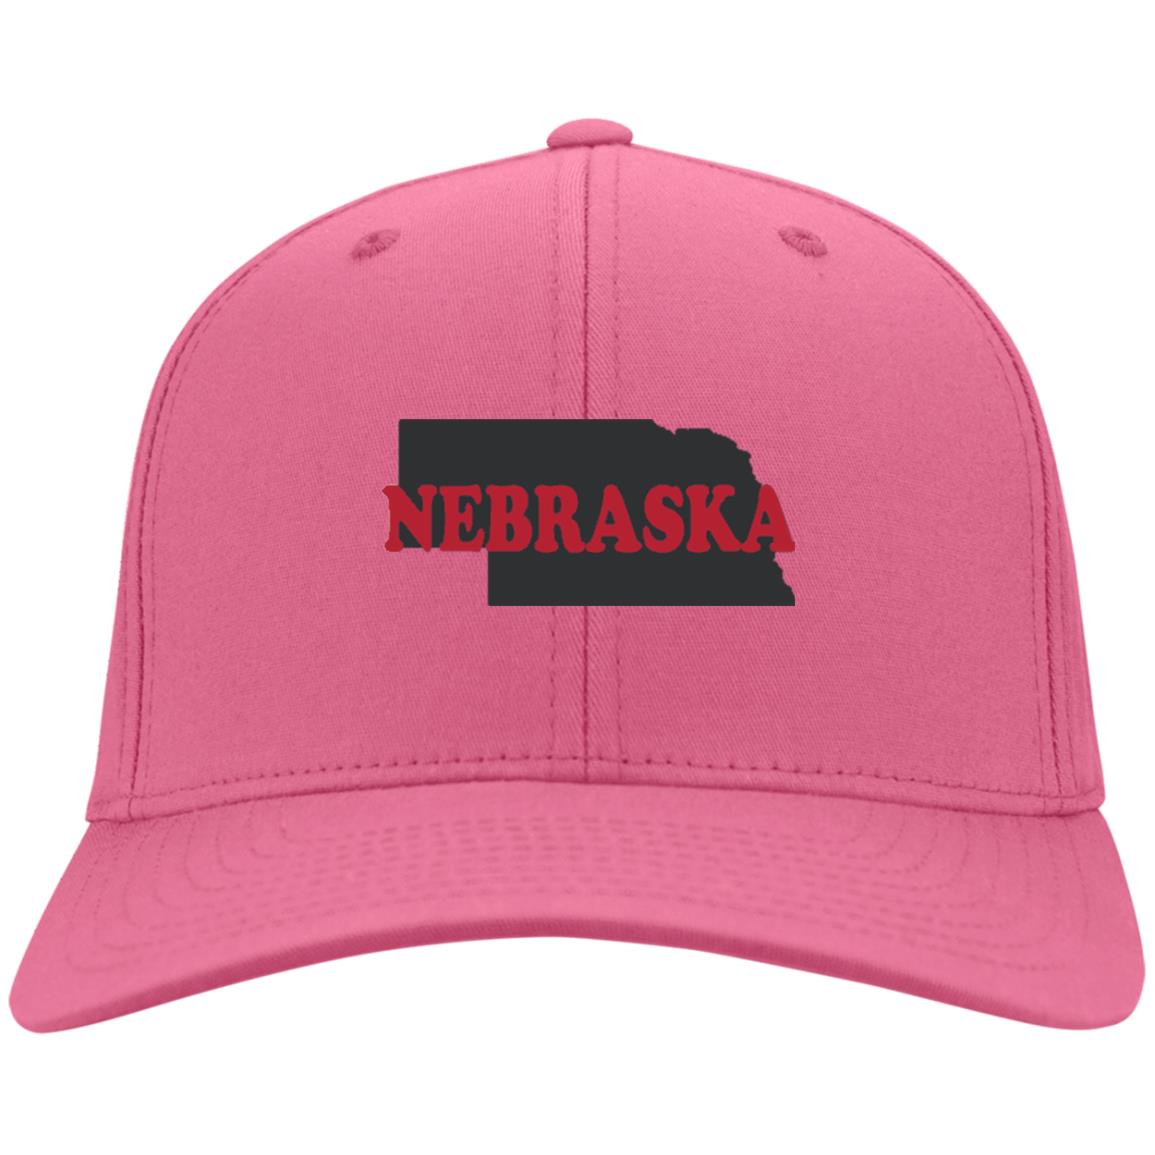 Nebraska State Hat